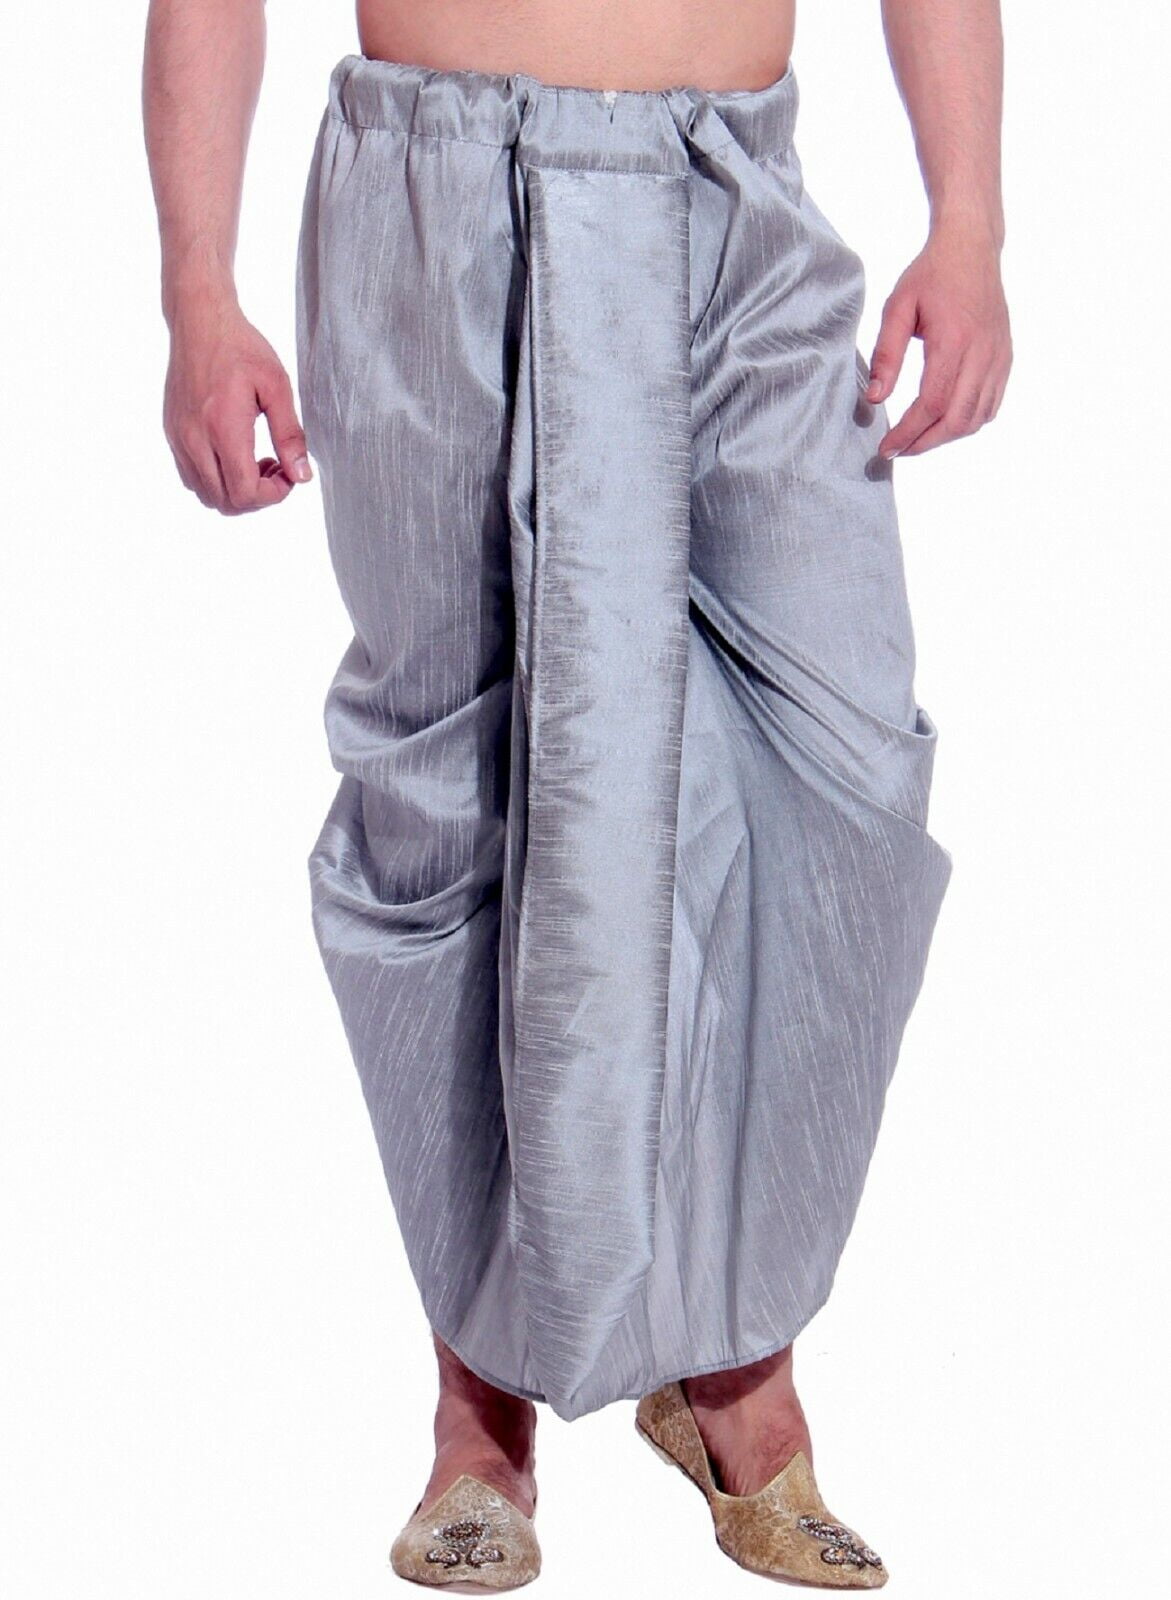 Buy Designer Dhoti Pants/Bottom Wear for Women Online India |AMPM